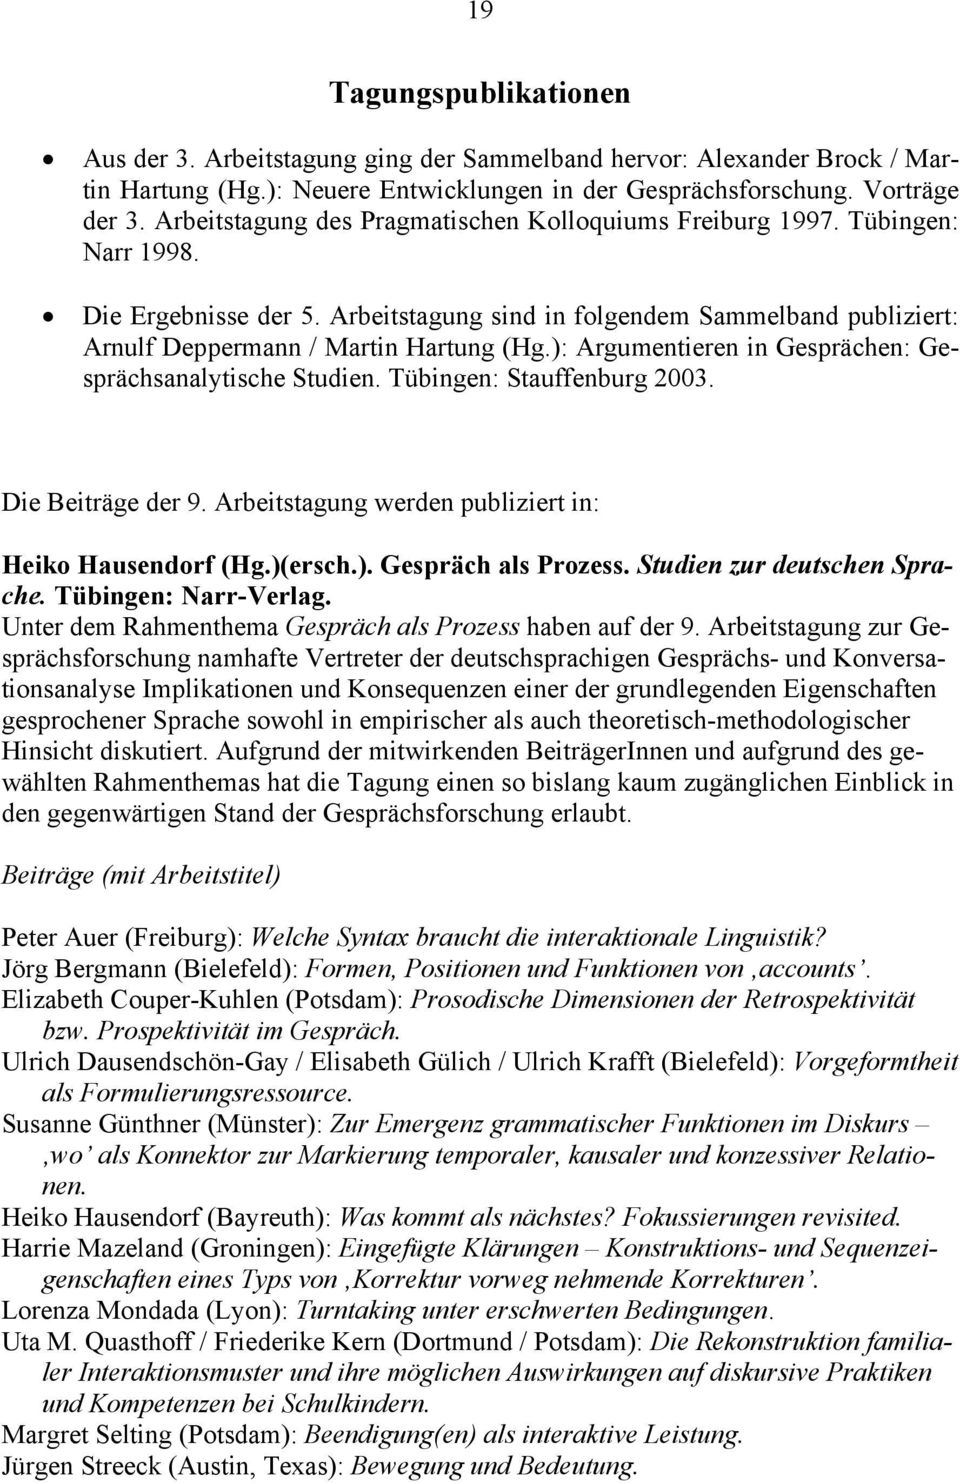 ): Argumentieren in Gesprächen: Gesprächsanalytische Studien. Tübingen: Stauffenburg 2003. Die Beiträge der 9. Arbeitstagung werden publiziert in: Heiko Hausendorf (Hg.)(ersch.). Gespräch als Prozess.